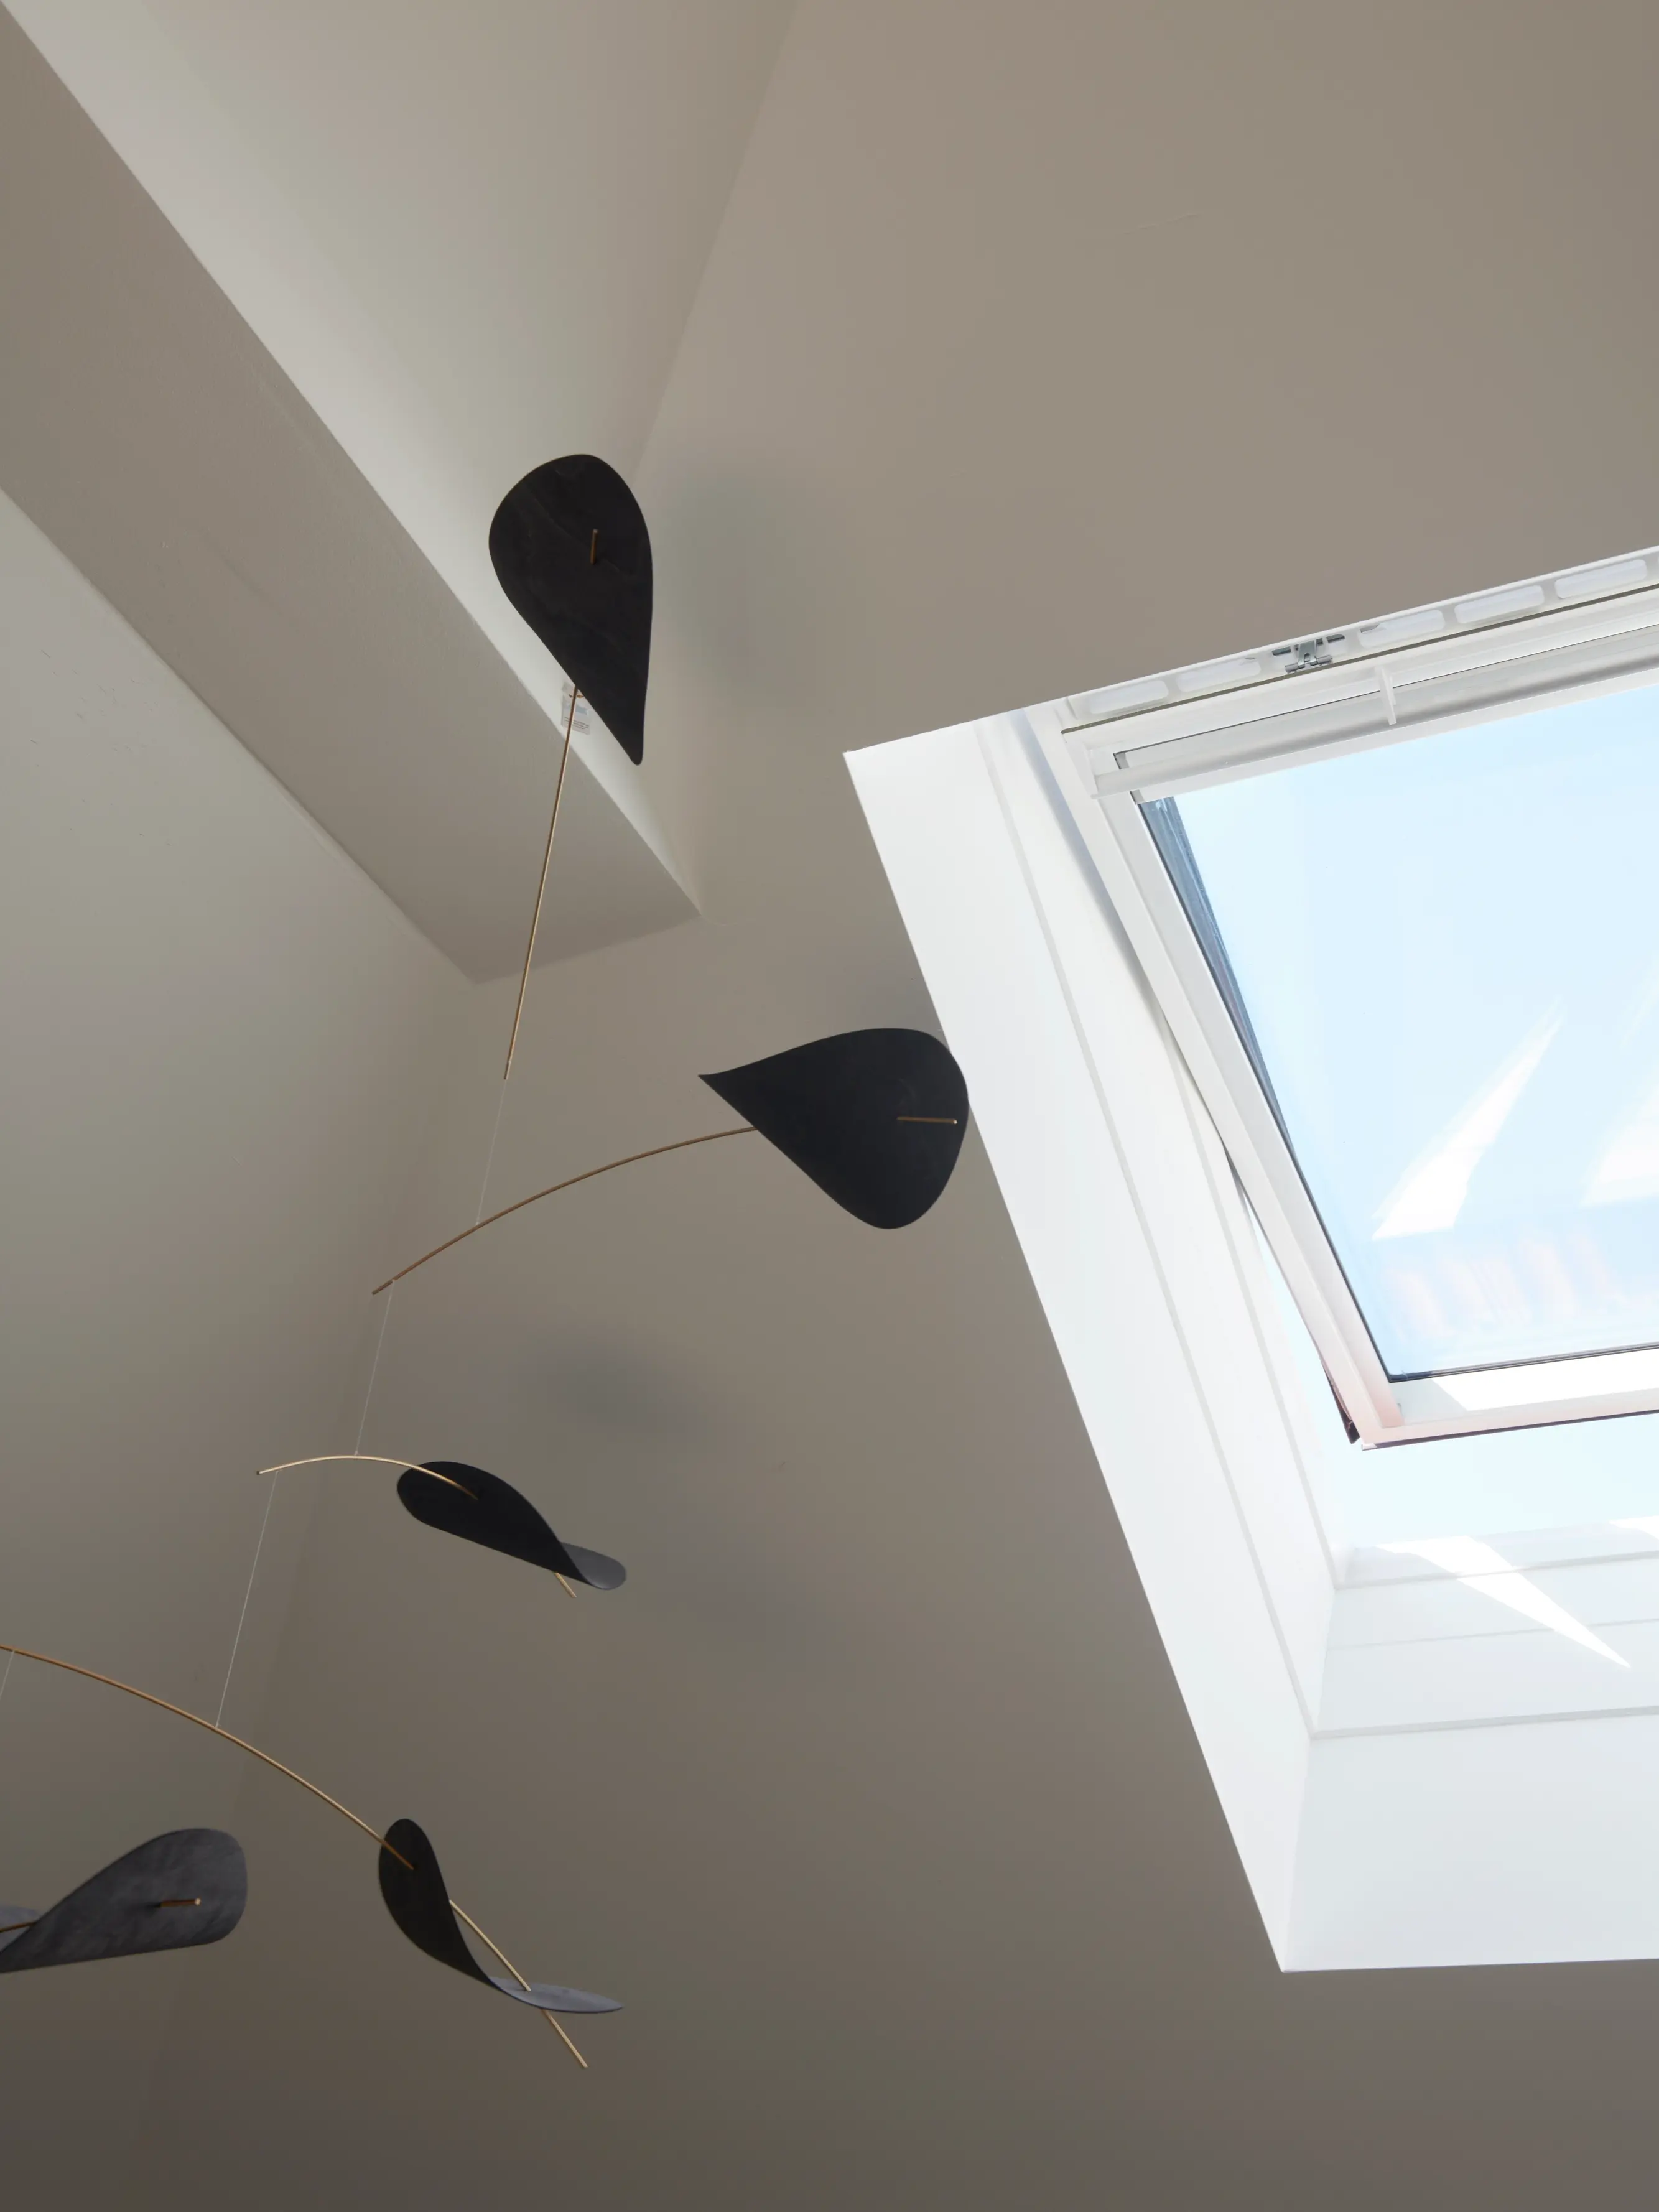 Chambre moderne avec sculpture mobile et lumière naturelle provenant d'une fenêtre de toit VELUX.